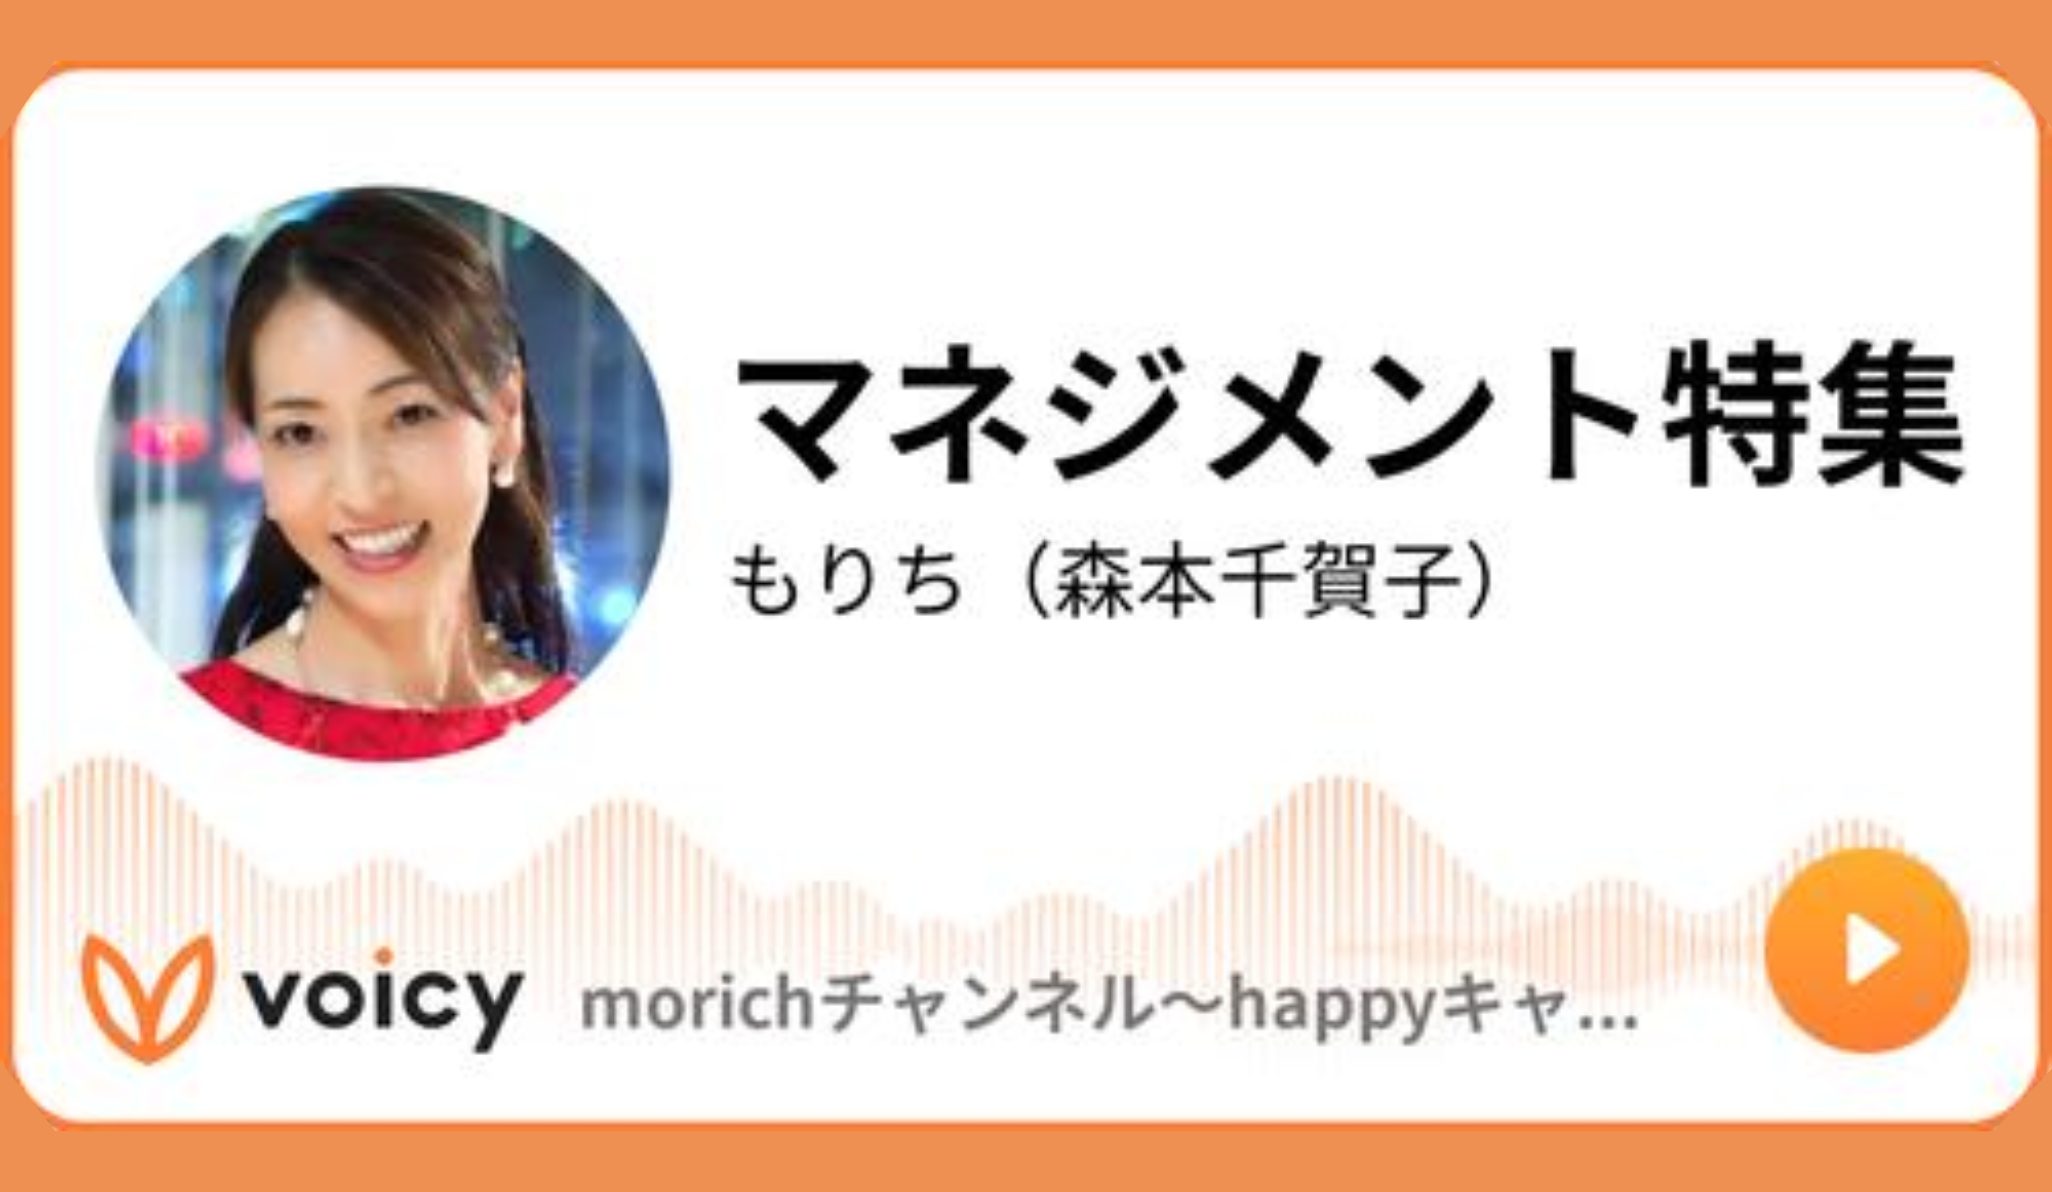 【Voicy】morichチャンネル”マネジメント特集”